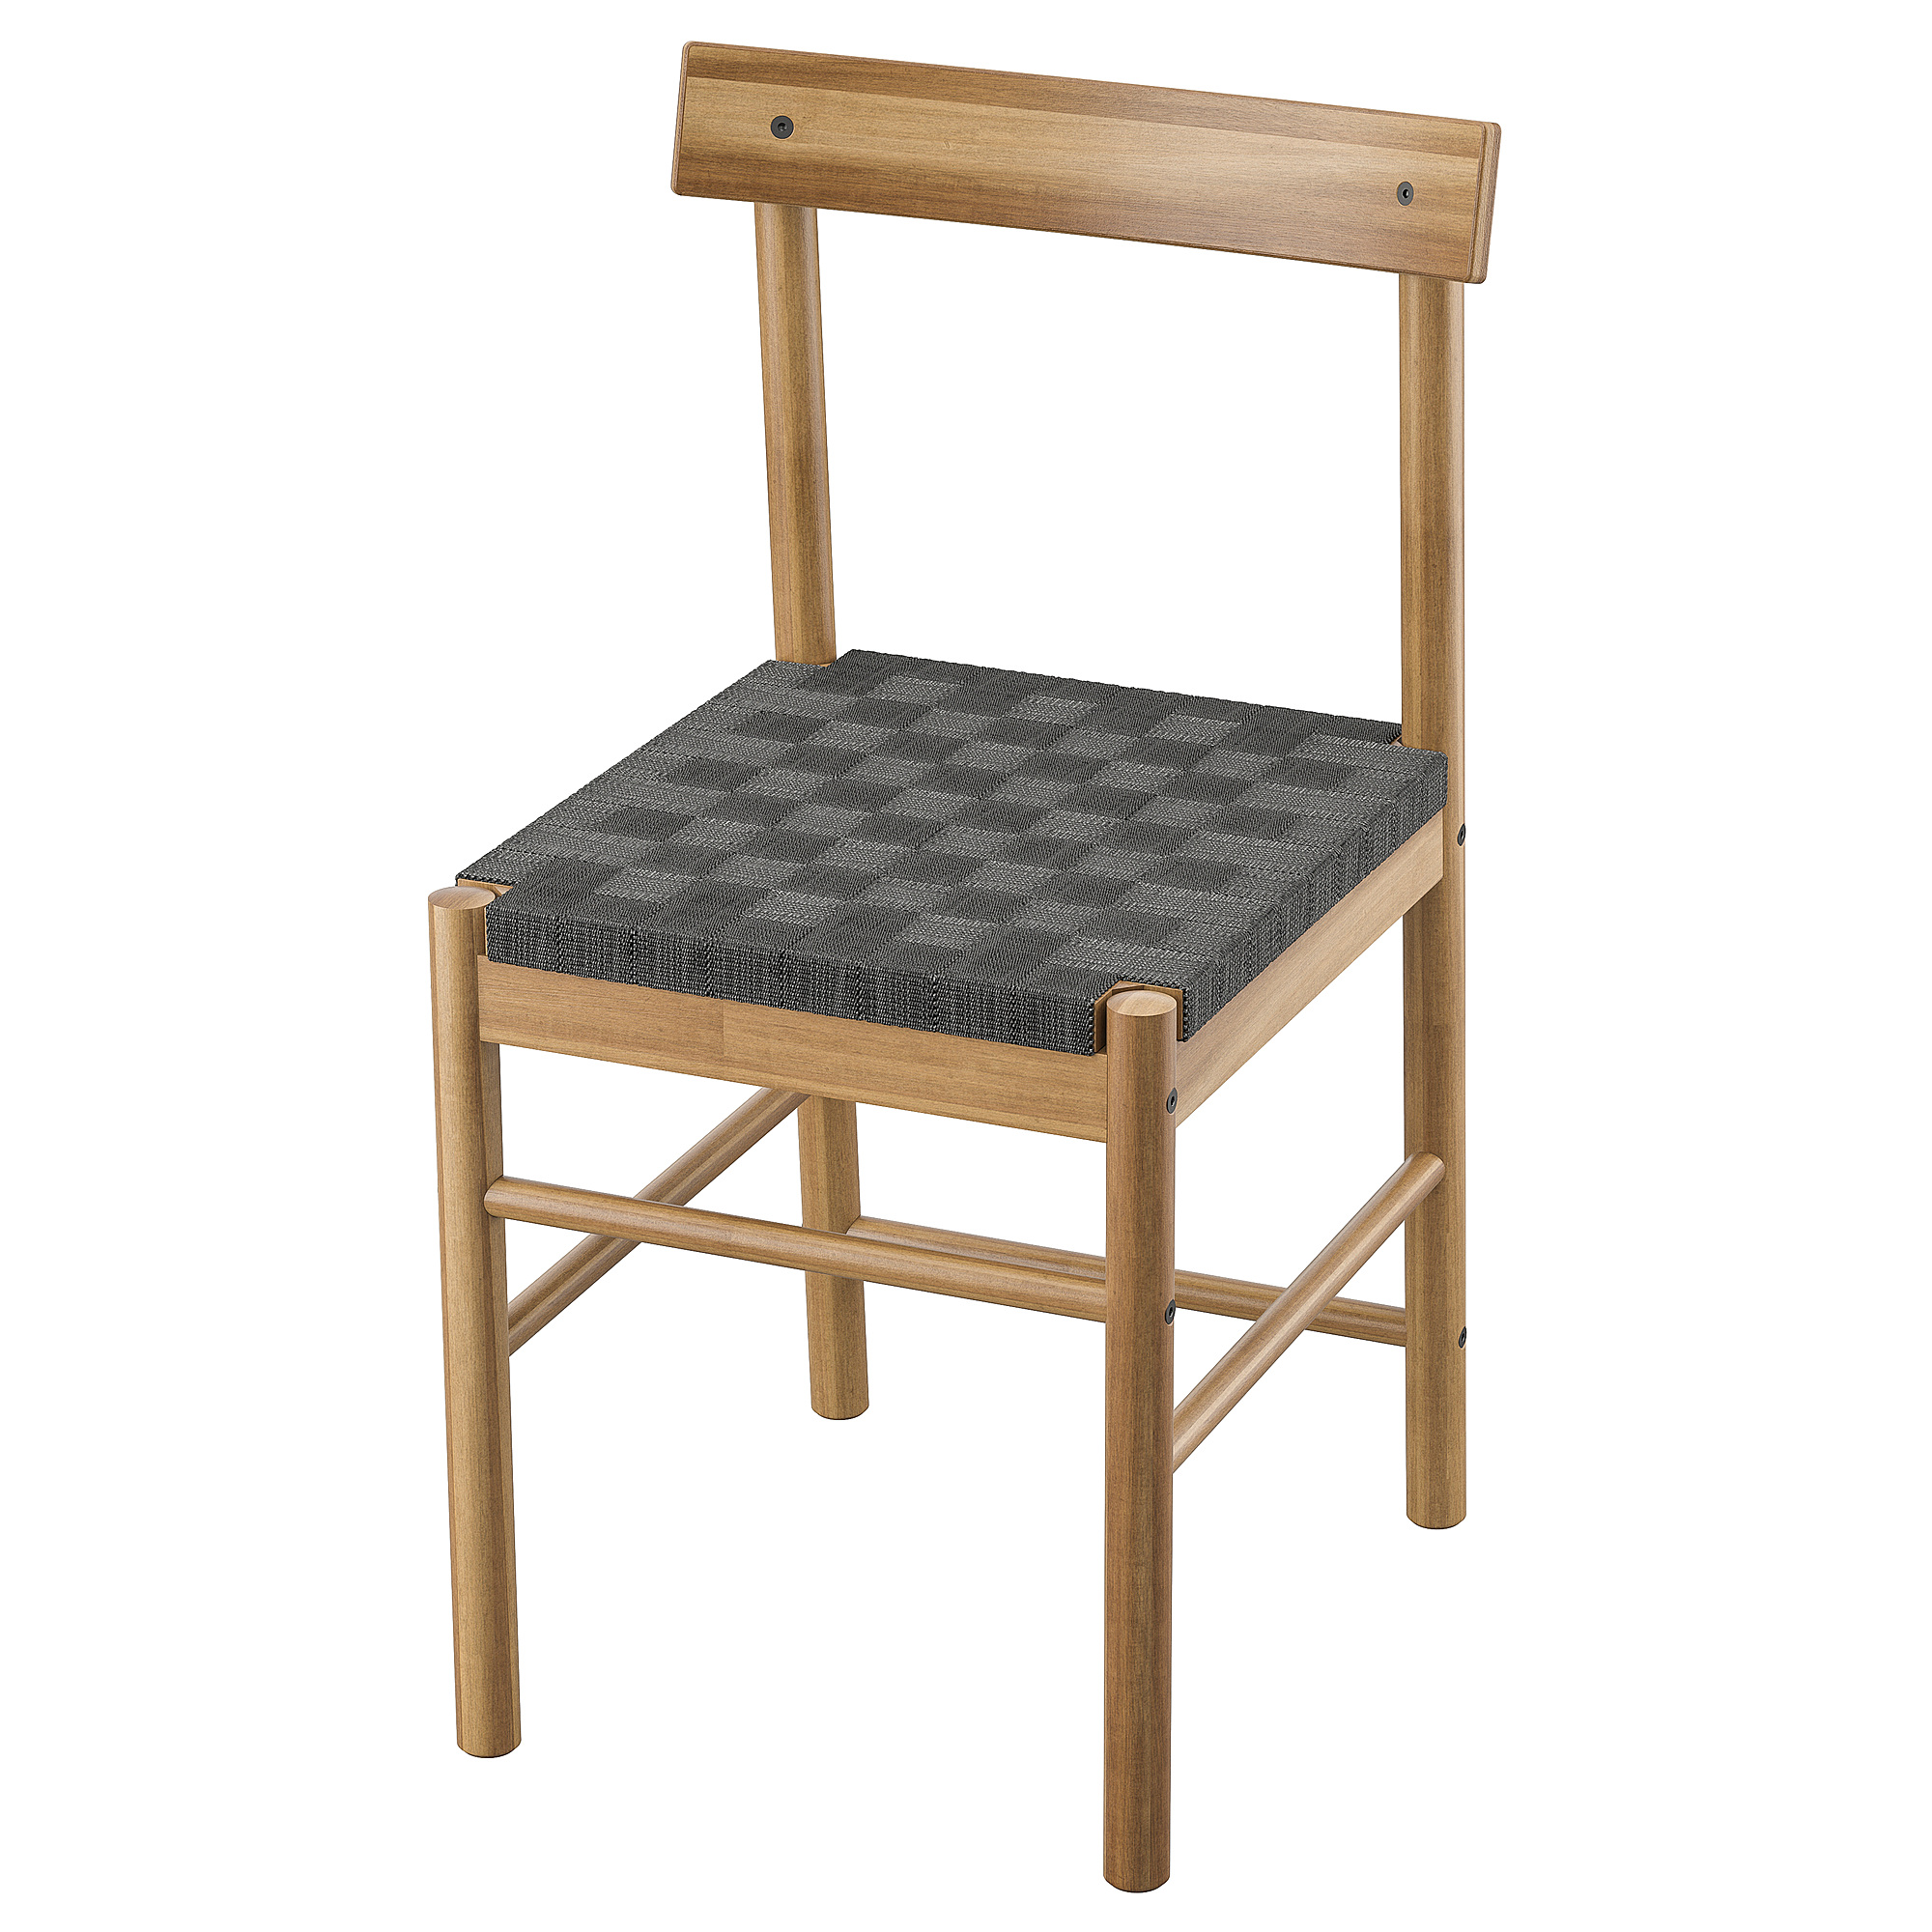 NACKANÄS - 椅子, 相思木| IKEA 香港及澳門